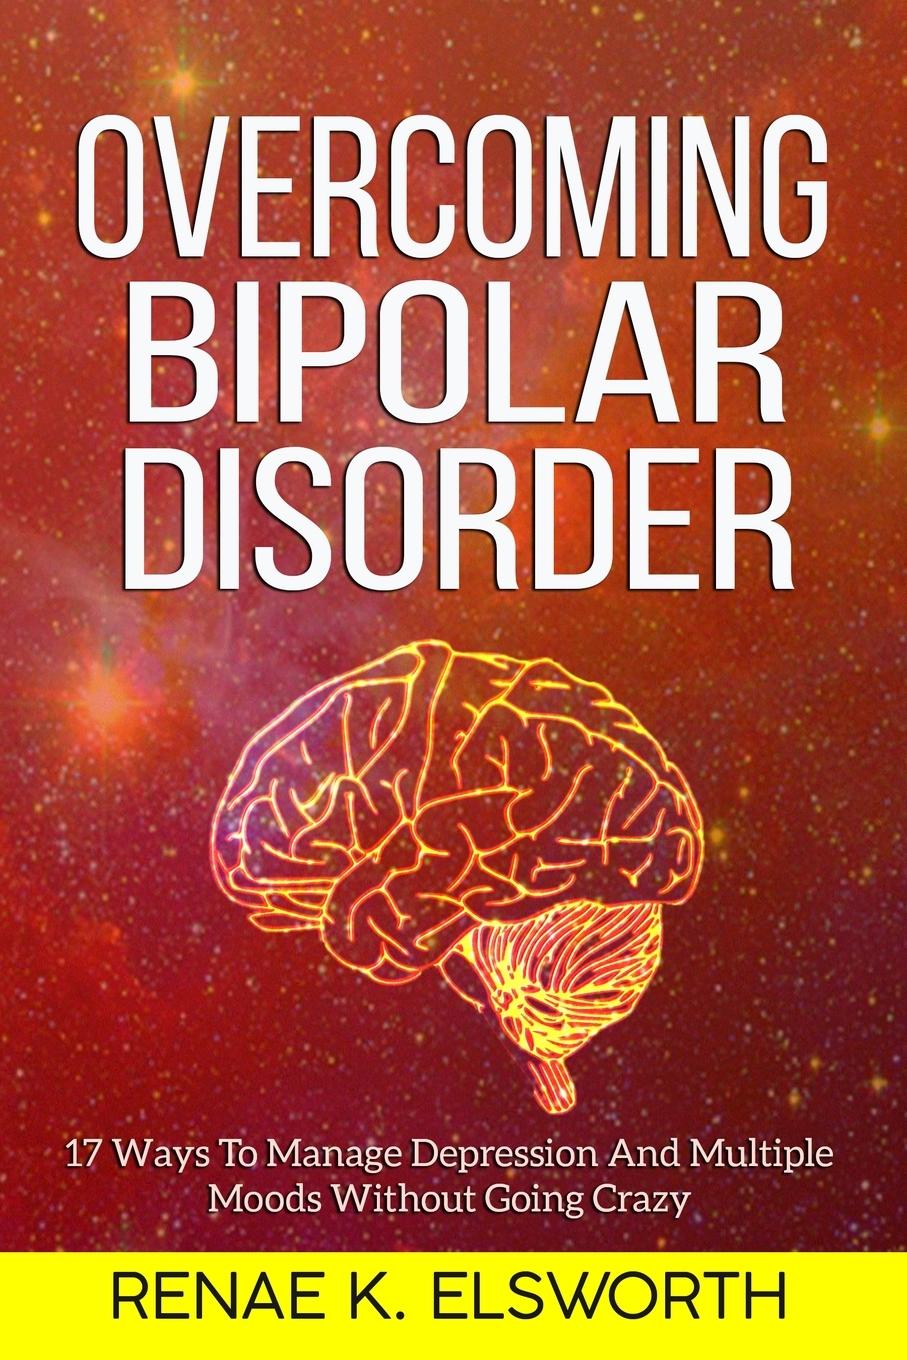 Carte Overcoming Bipolar Disorder RENAE K. ELSWORTH